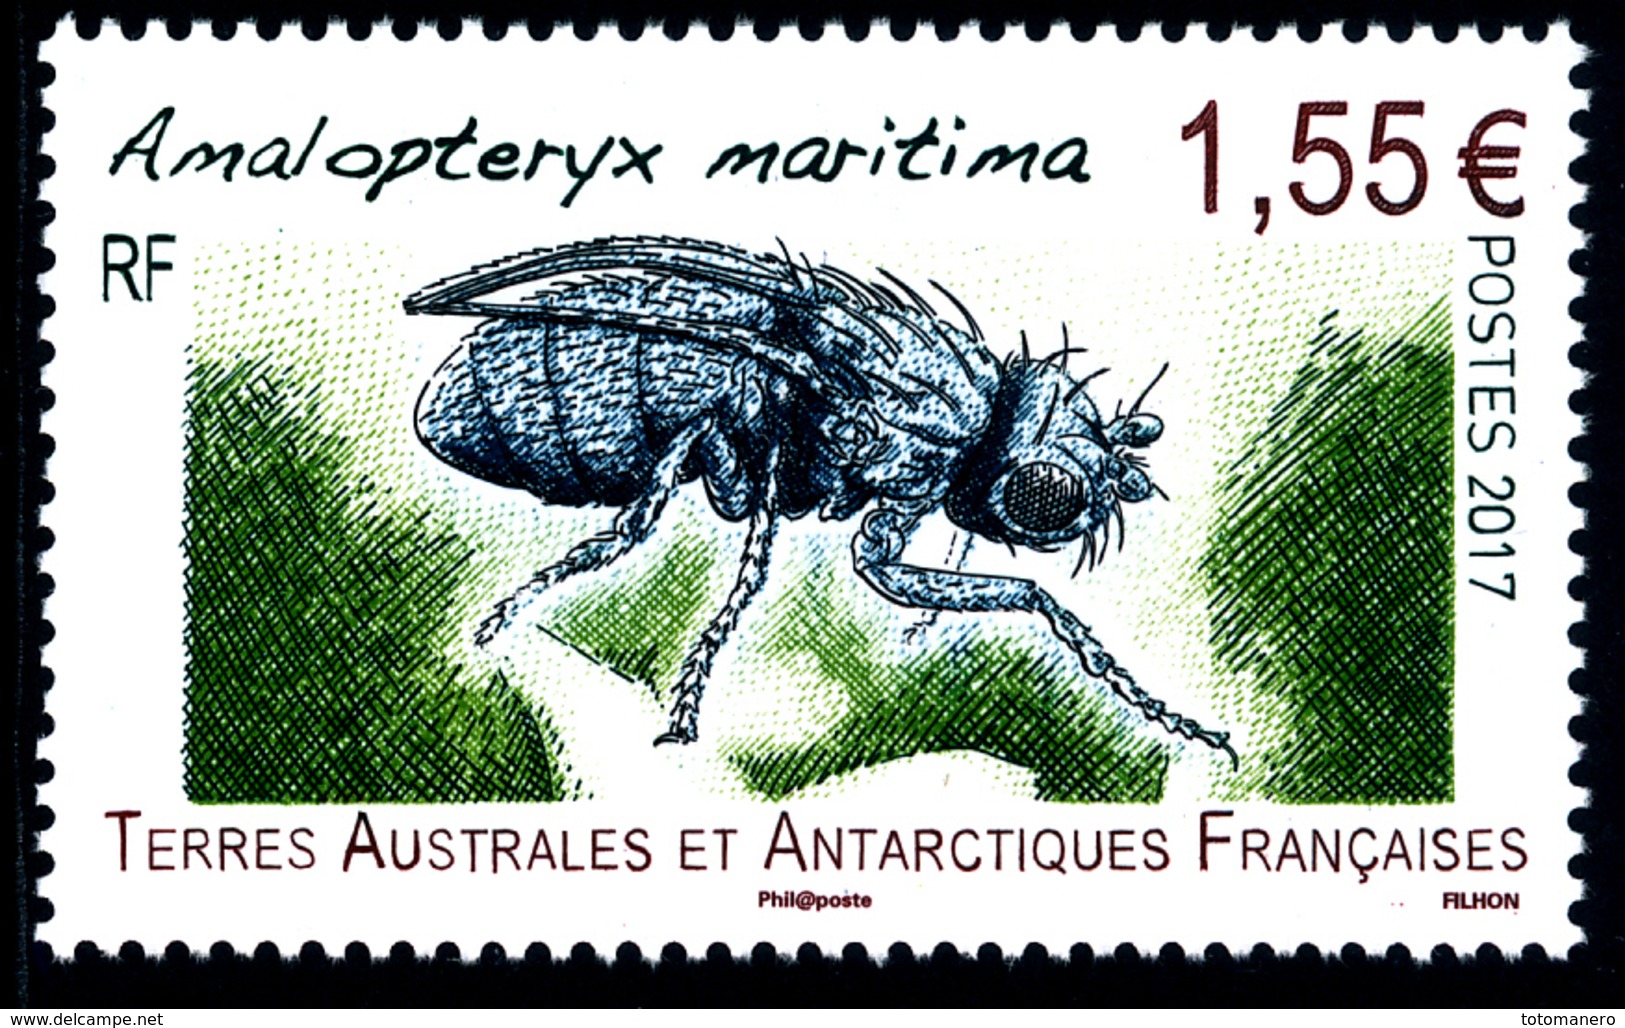 TAAF 2017 - Amalopteryx** - Unused Stamps